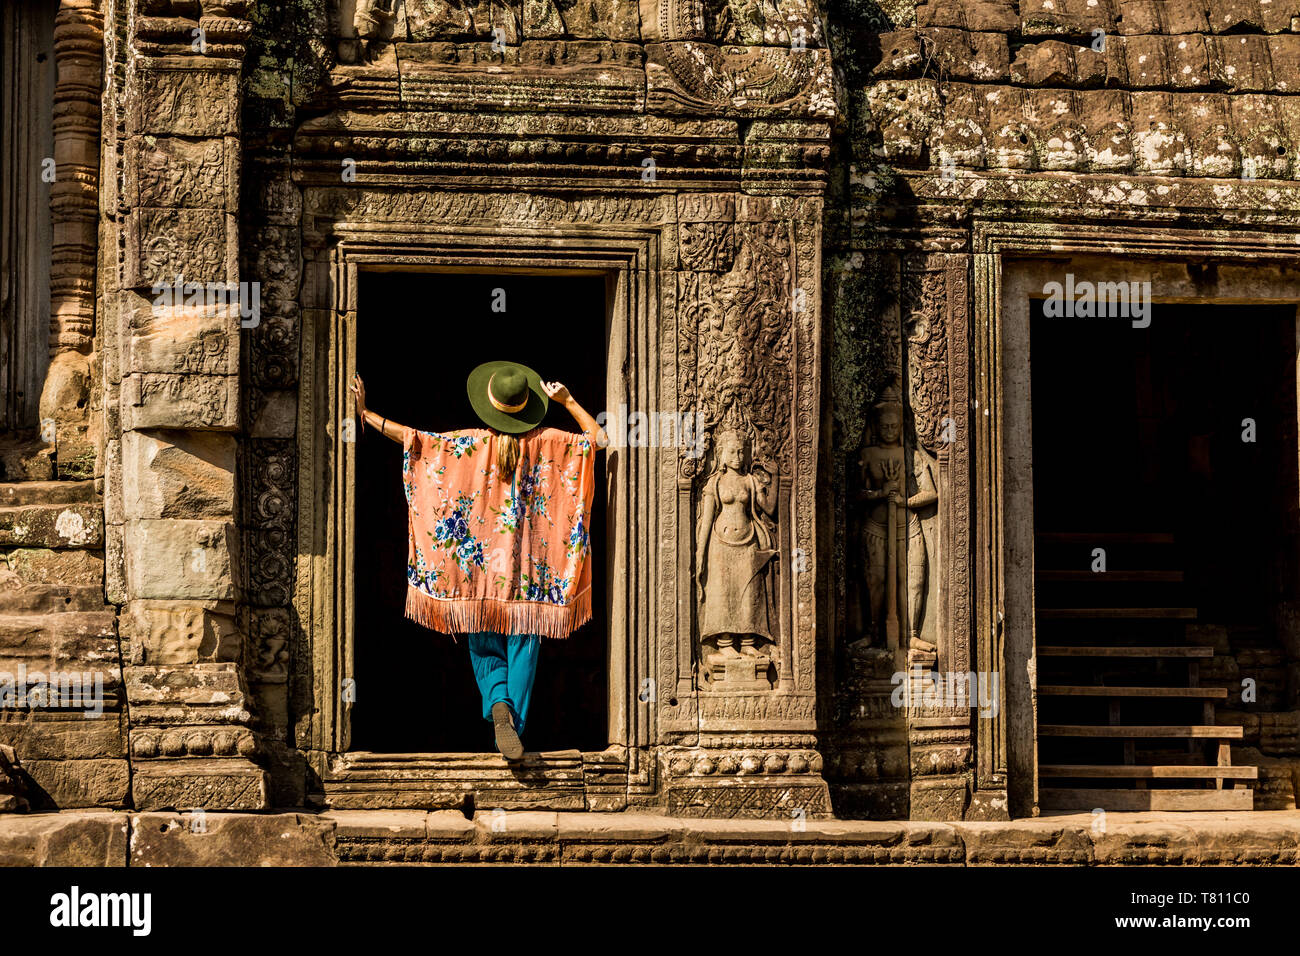 Donna americana turistico a Angkor Wat, templi di Angkor, Sito Patrimonio Mondiale dell'UNESCO, Siem Reap, Cambogia, Indocina, Asia sud-orientale, Asia Foto Stock